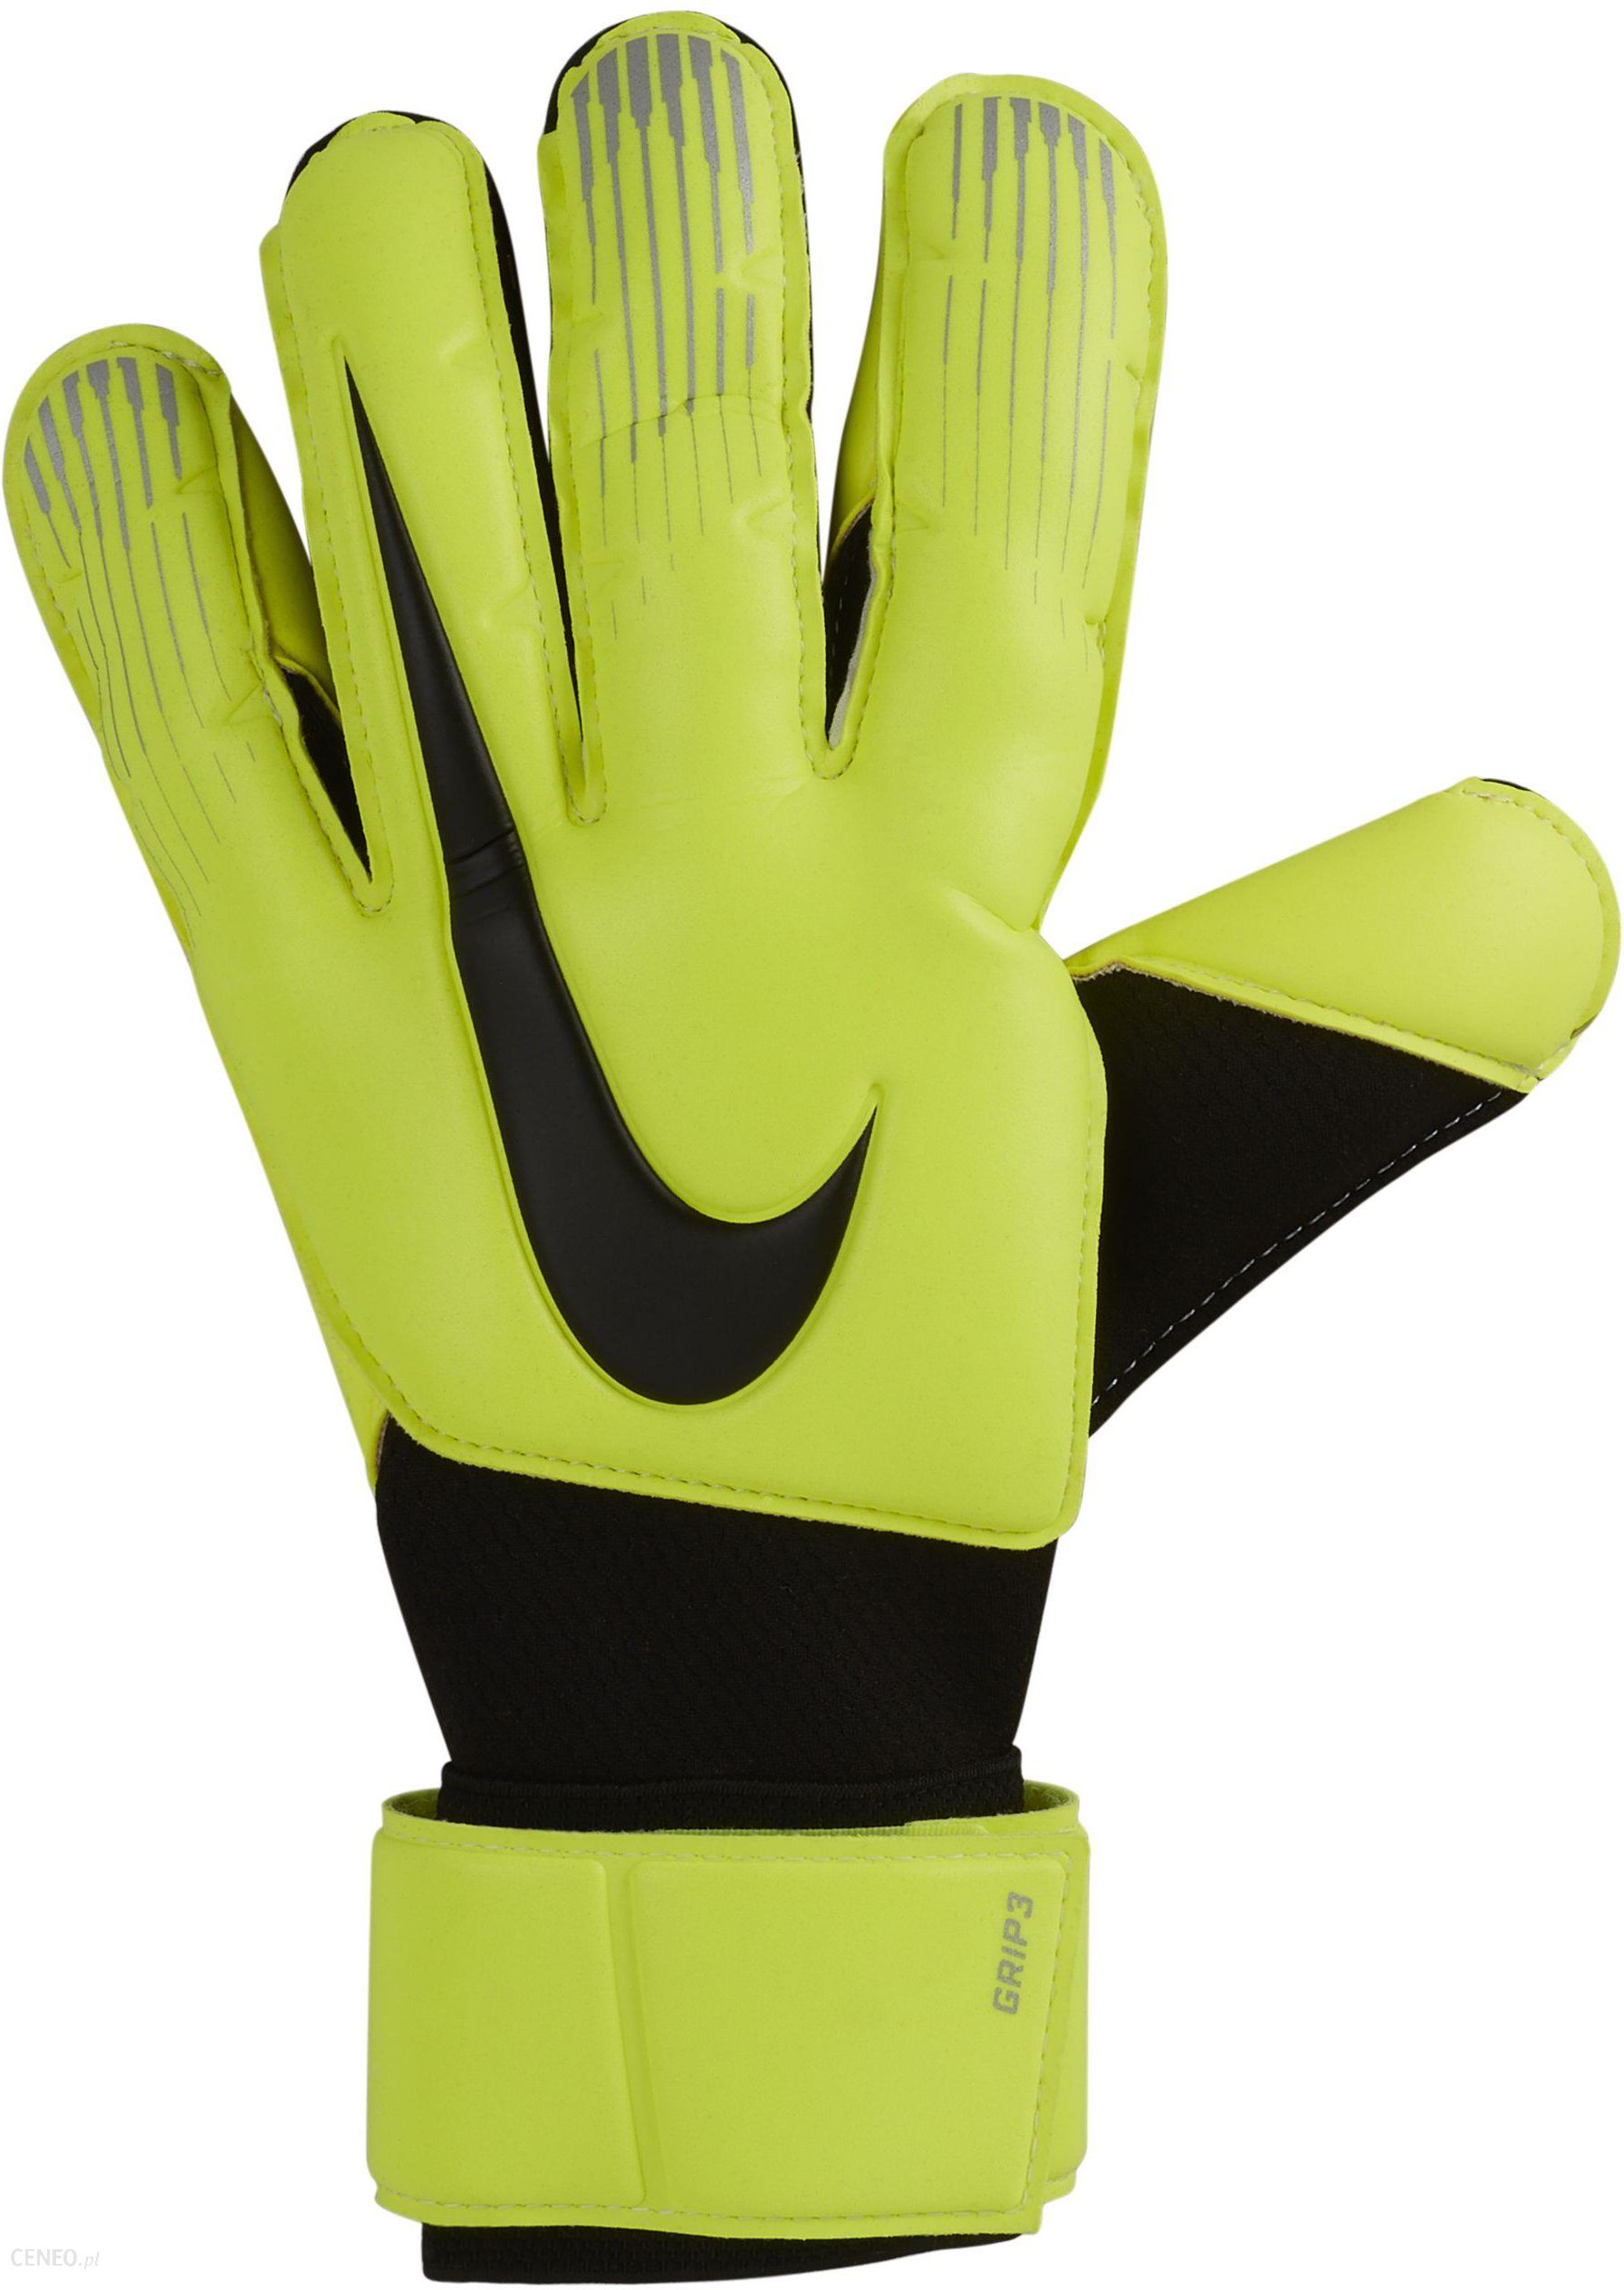 Купить перчатки вратарские футбольные. Nike GK Grip 3. Вратарские перчатки Nike GK Grip 3. Nike Vapor Grip 3. Найк Вапор перчатки.